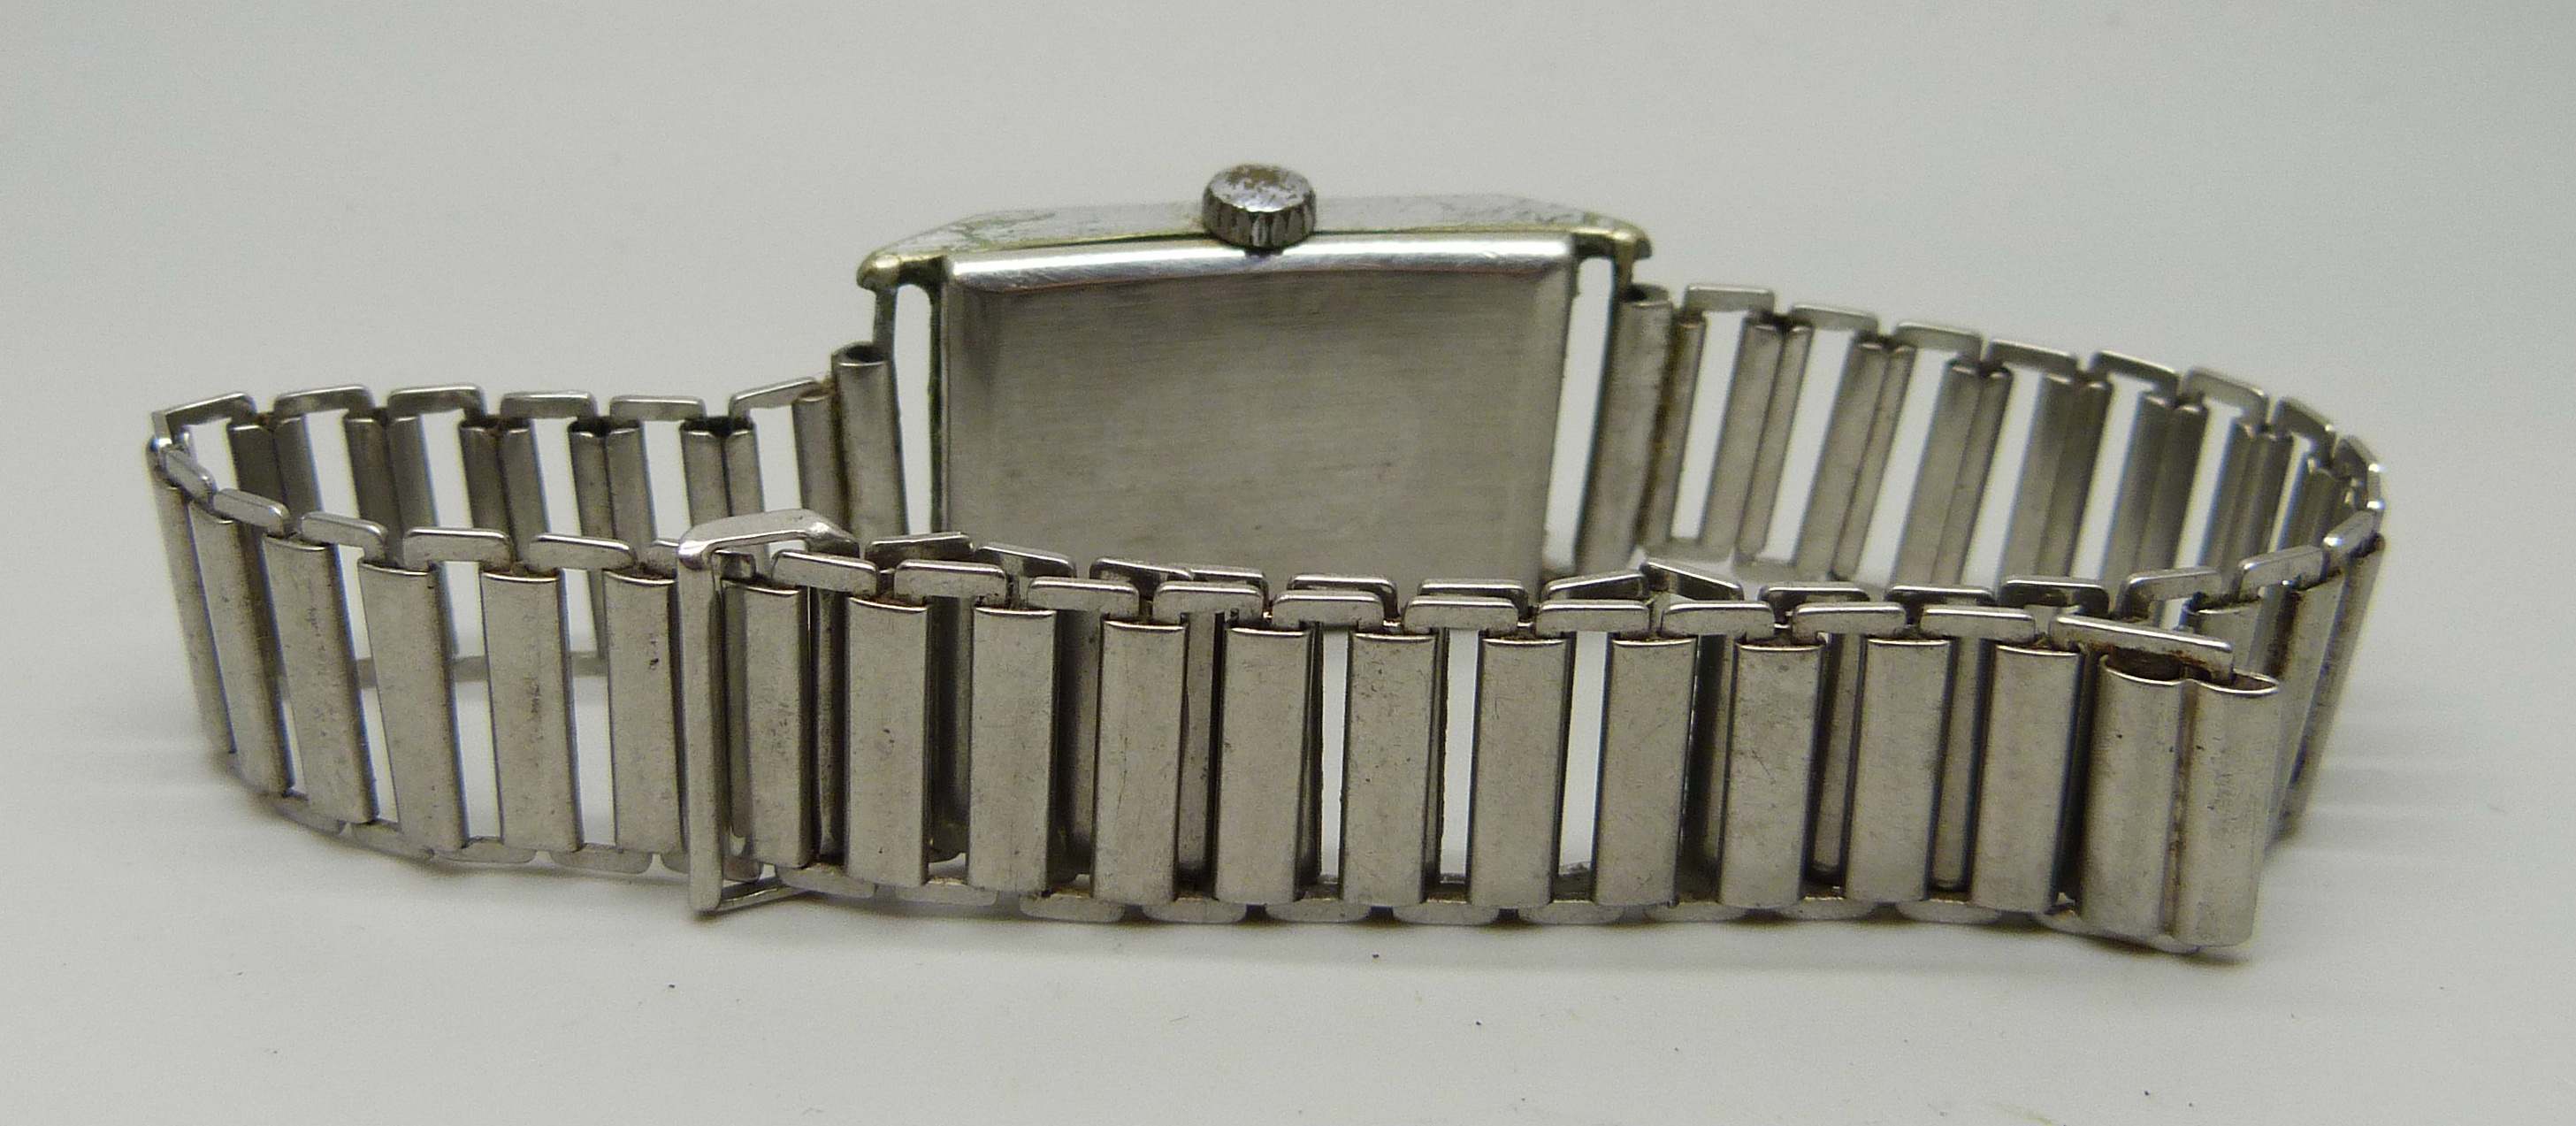 A gentleman's Buren Art Deco rectangular 1930s steel wristwatch - Image 6 of 6